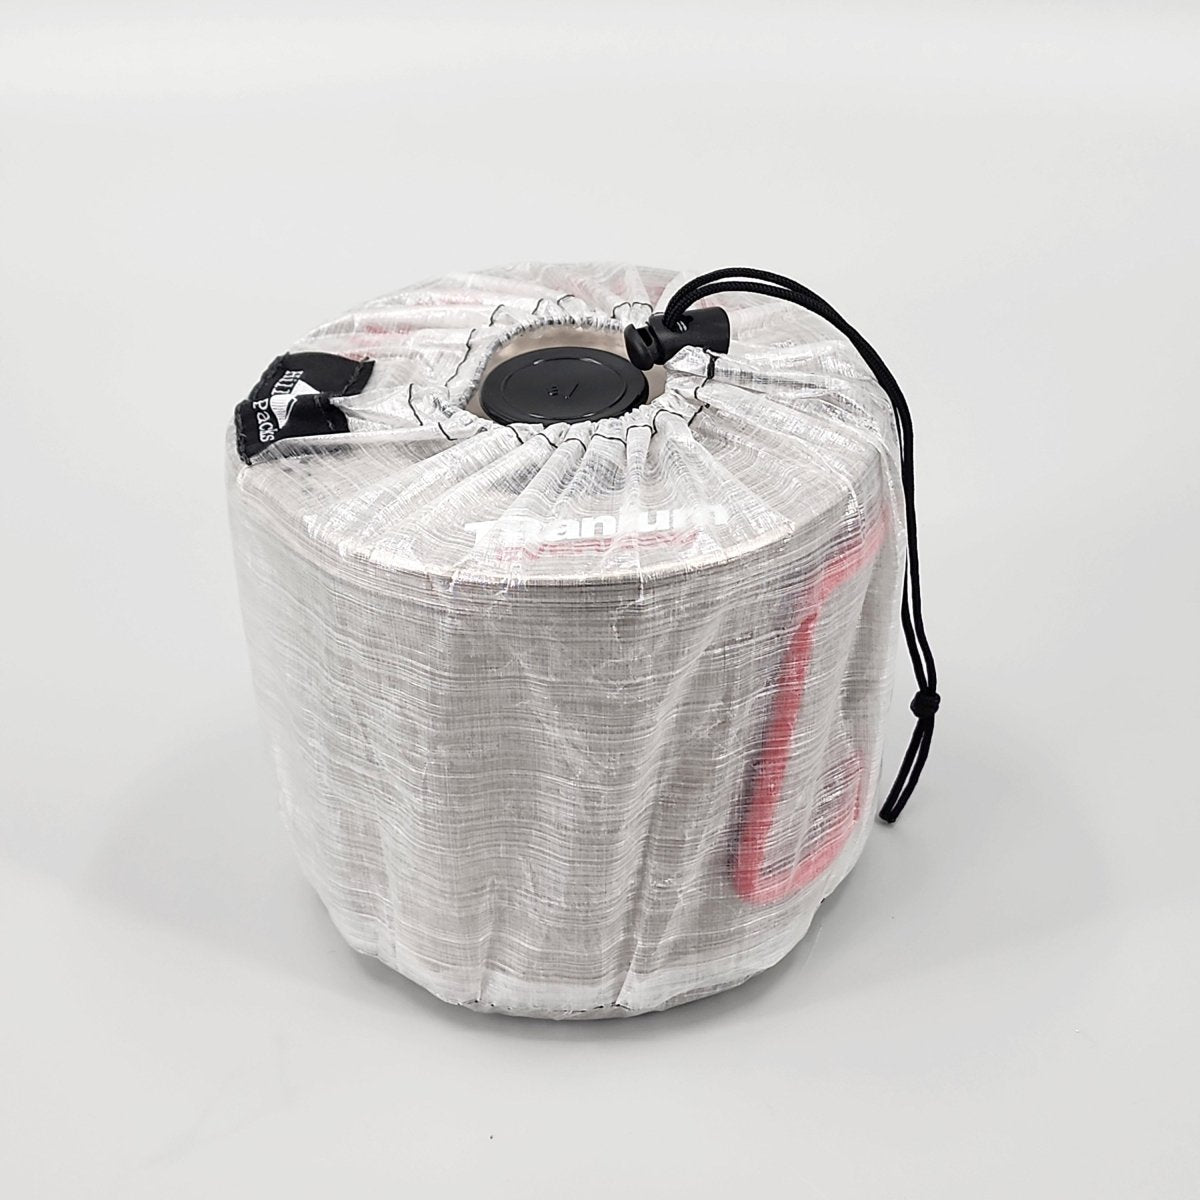 POTANE Precut Bags for Food 150 Gallon 11x16, Quart 8x12, Pint